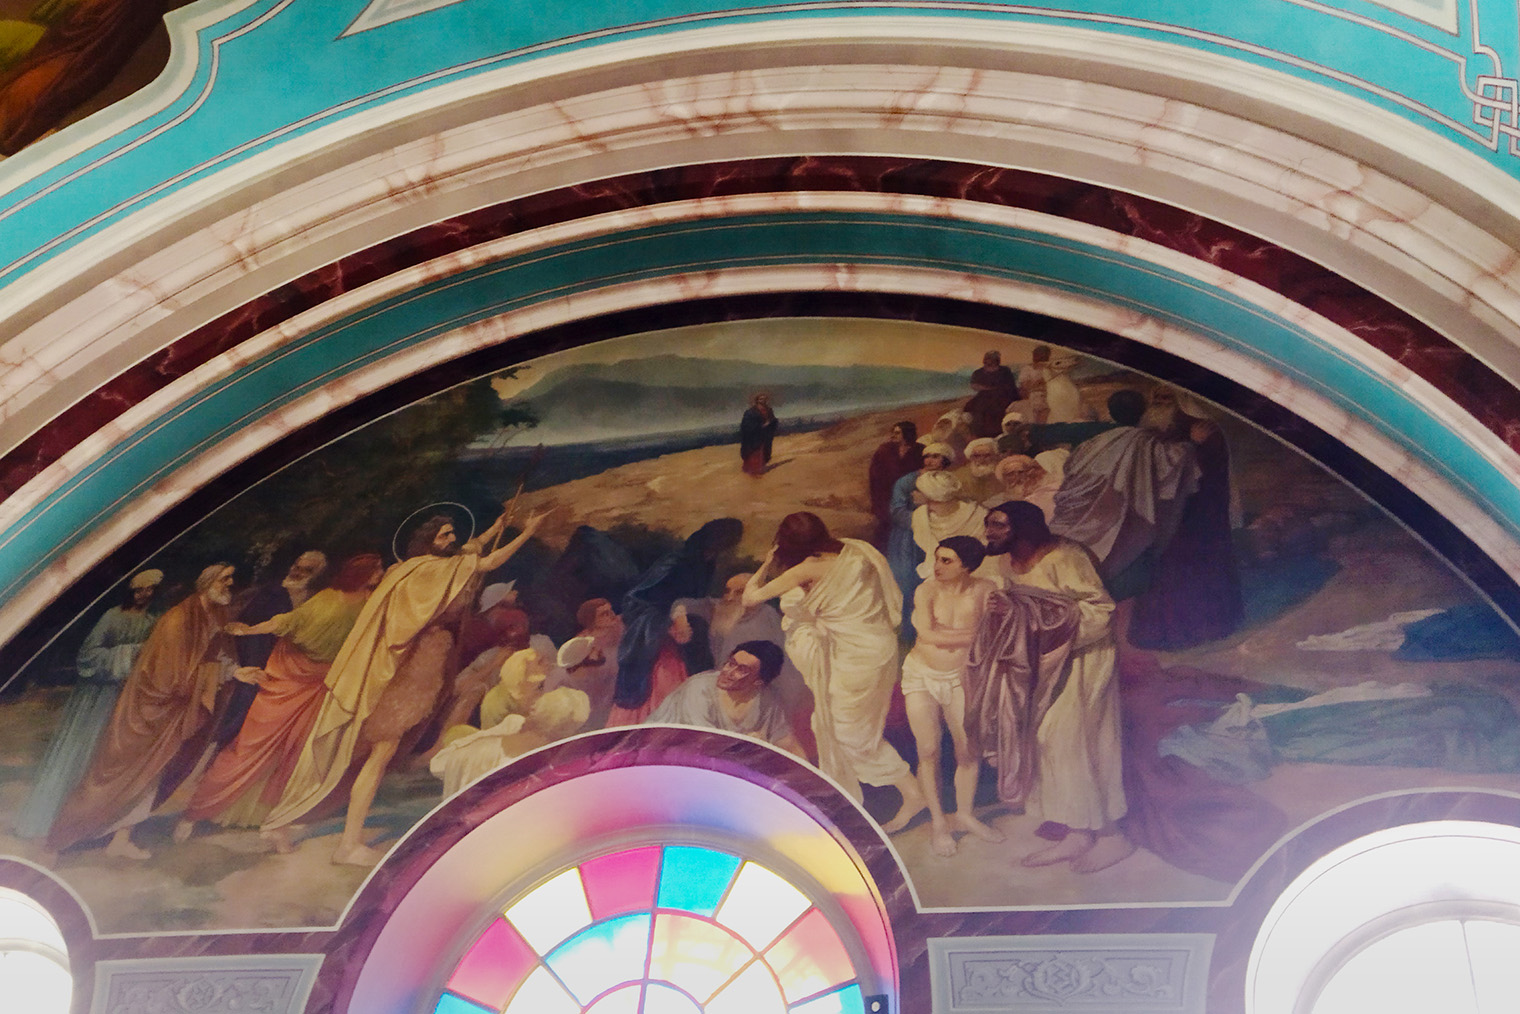 Фреска с копией картины «Явление Христа народу» в храме Иоанна Предтечи. Неизвестный художник решил одеть персонажей, которые в оригинале обнажены